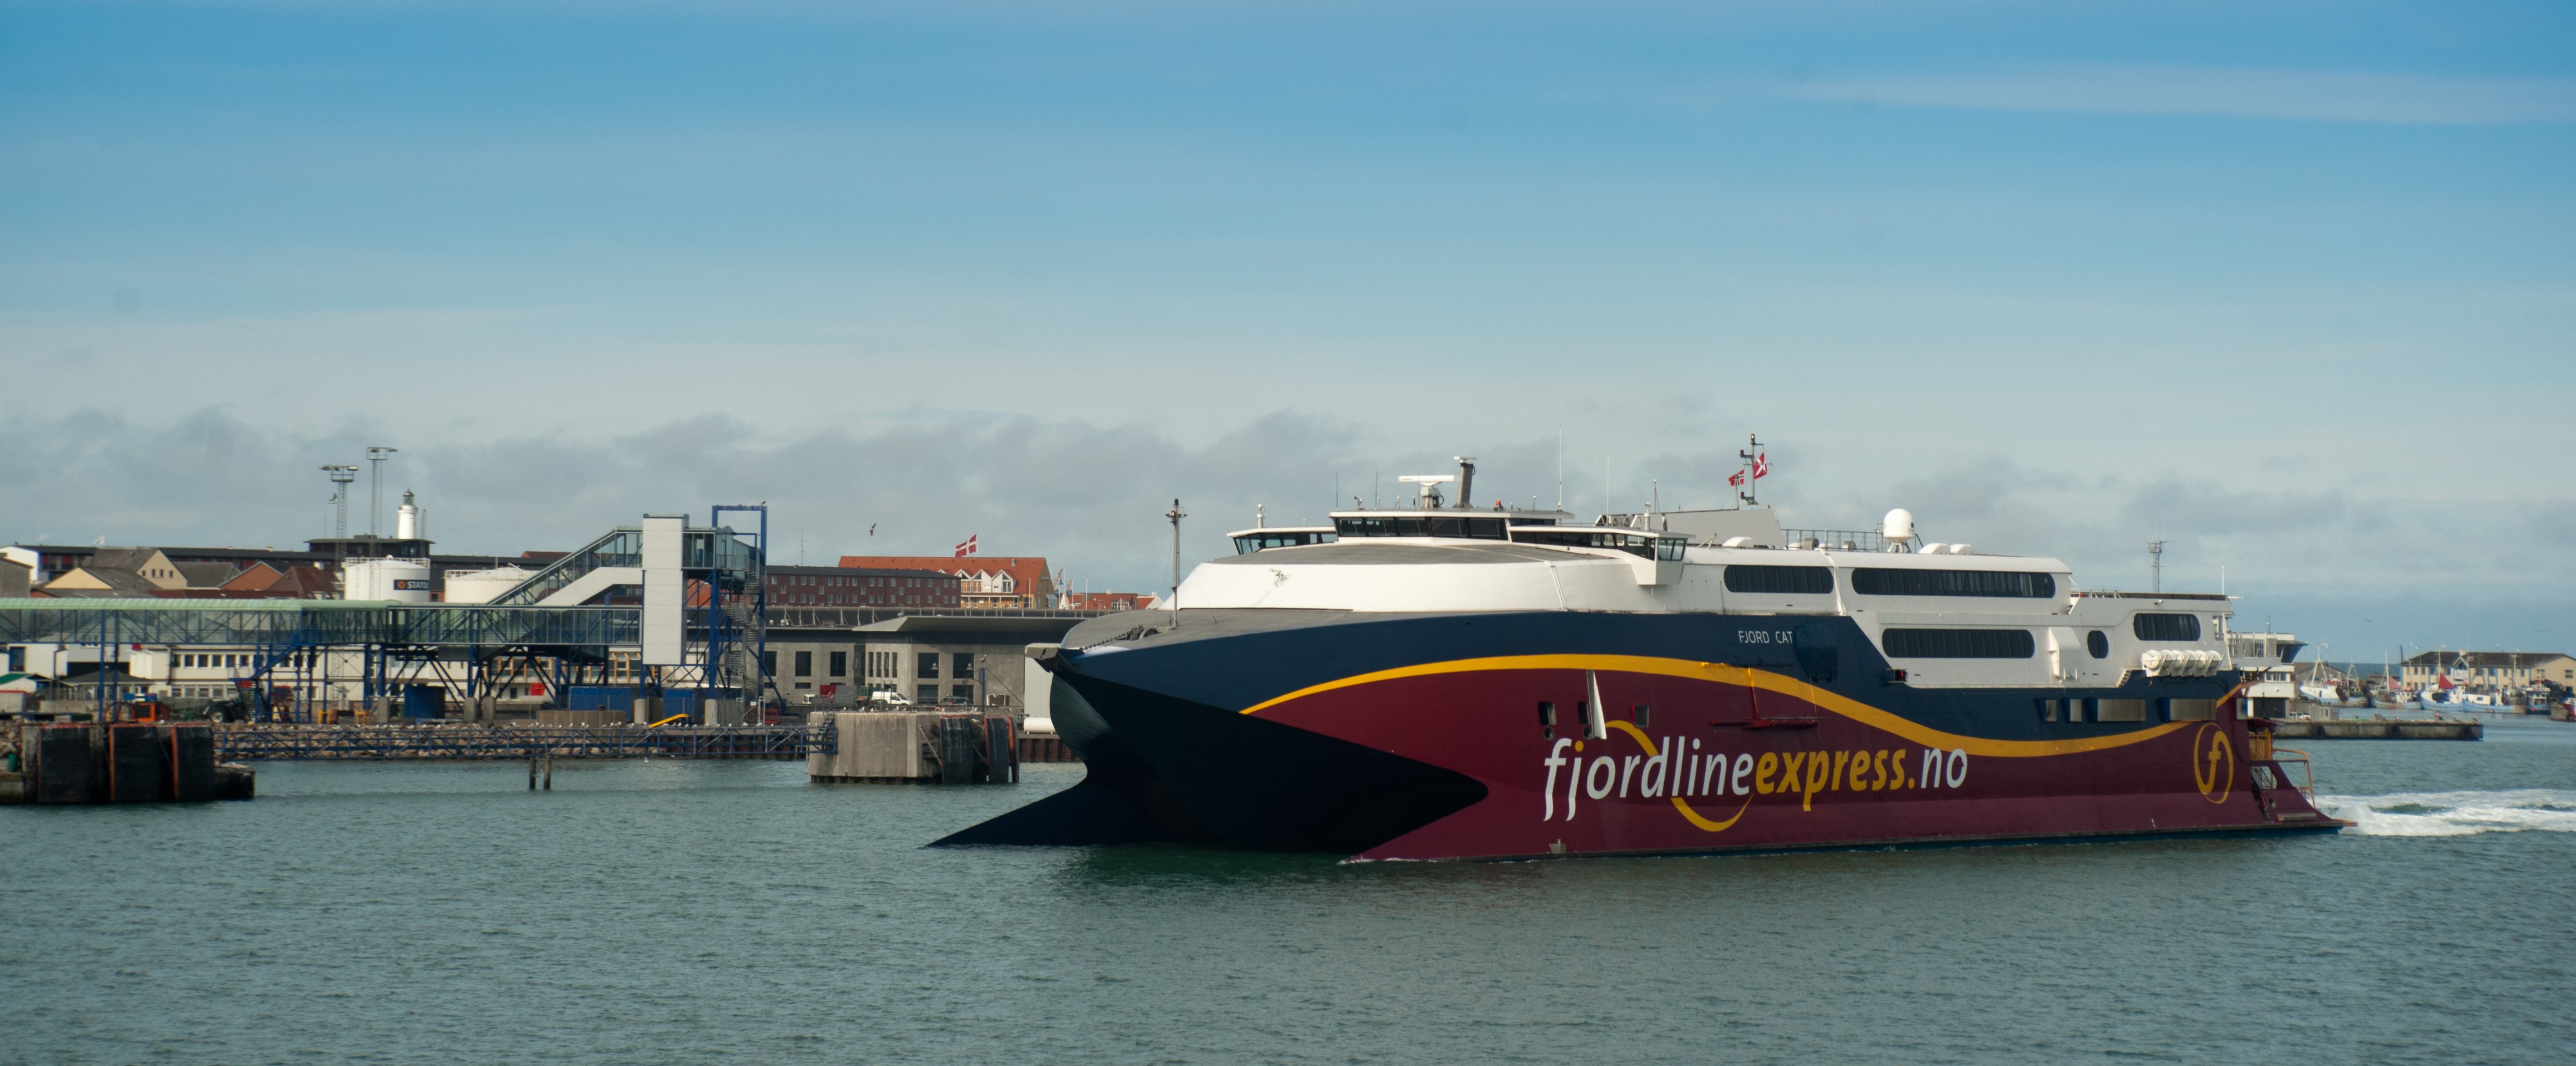 Fjordline express ferry, Hirtshals